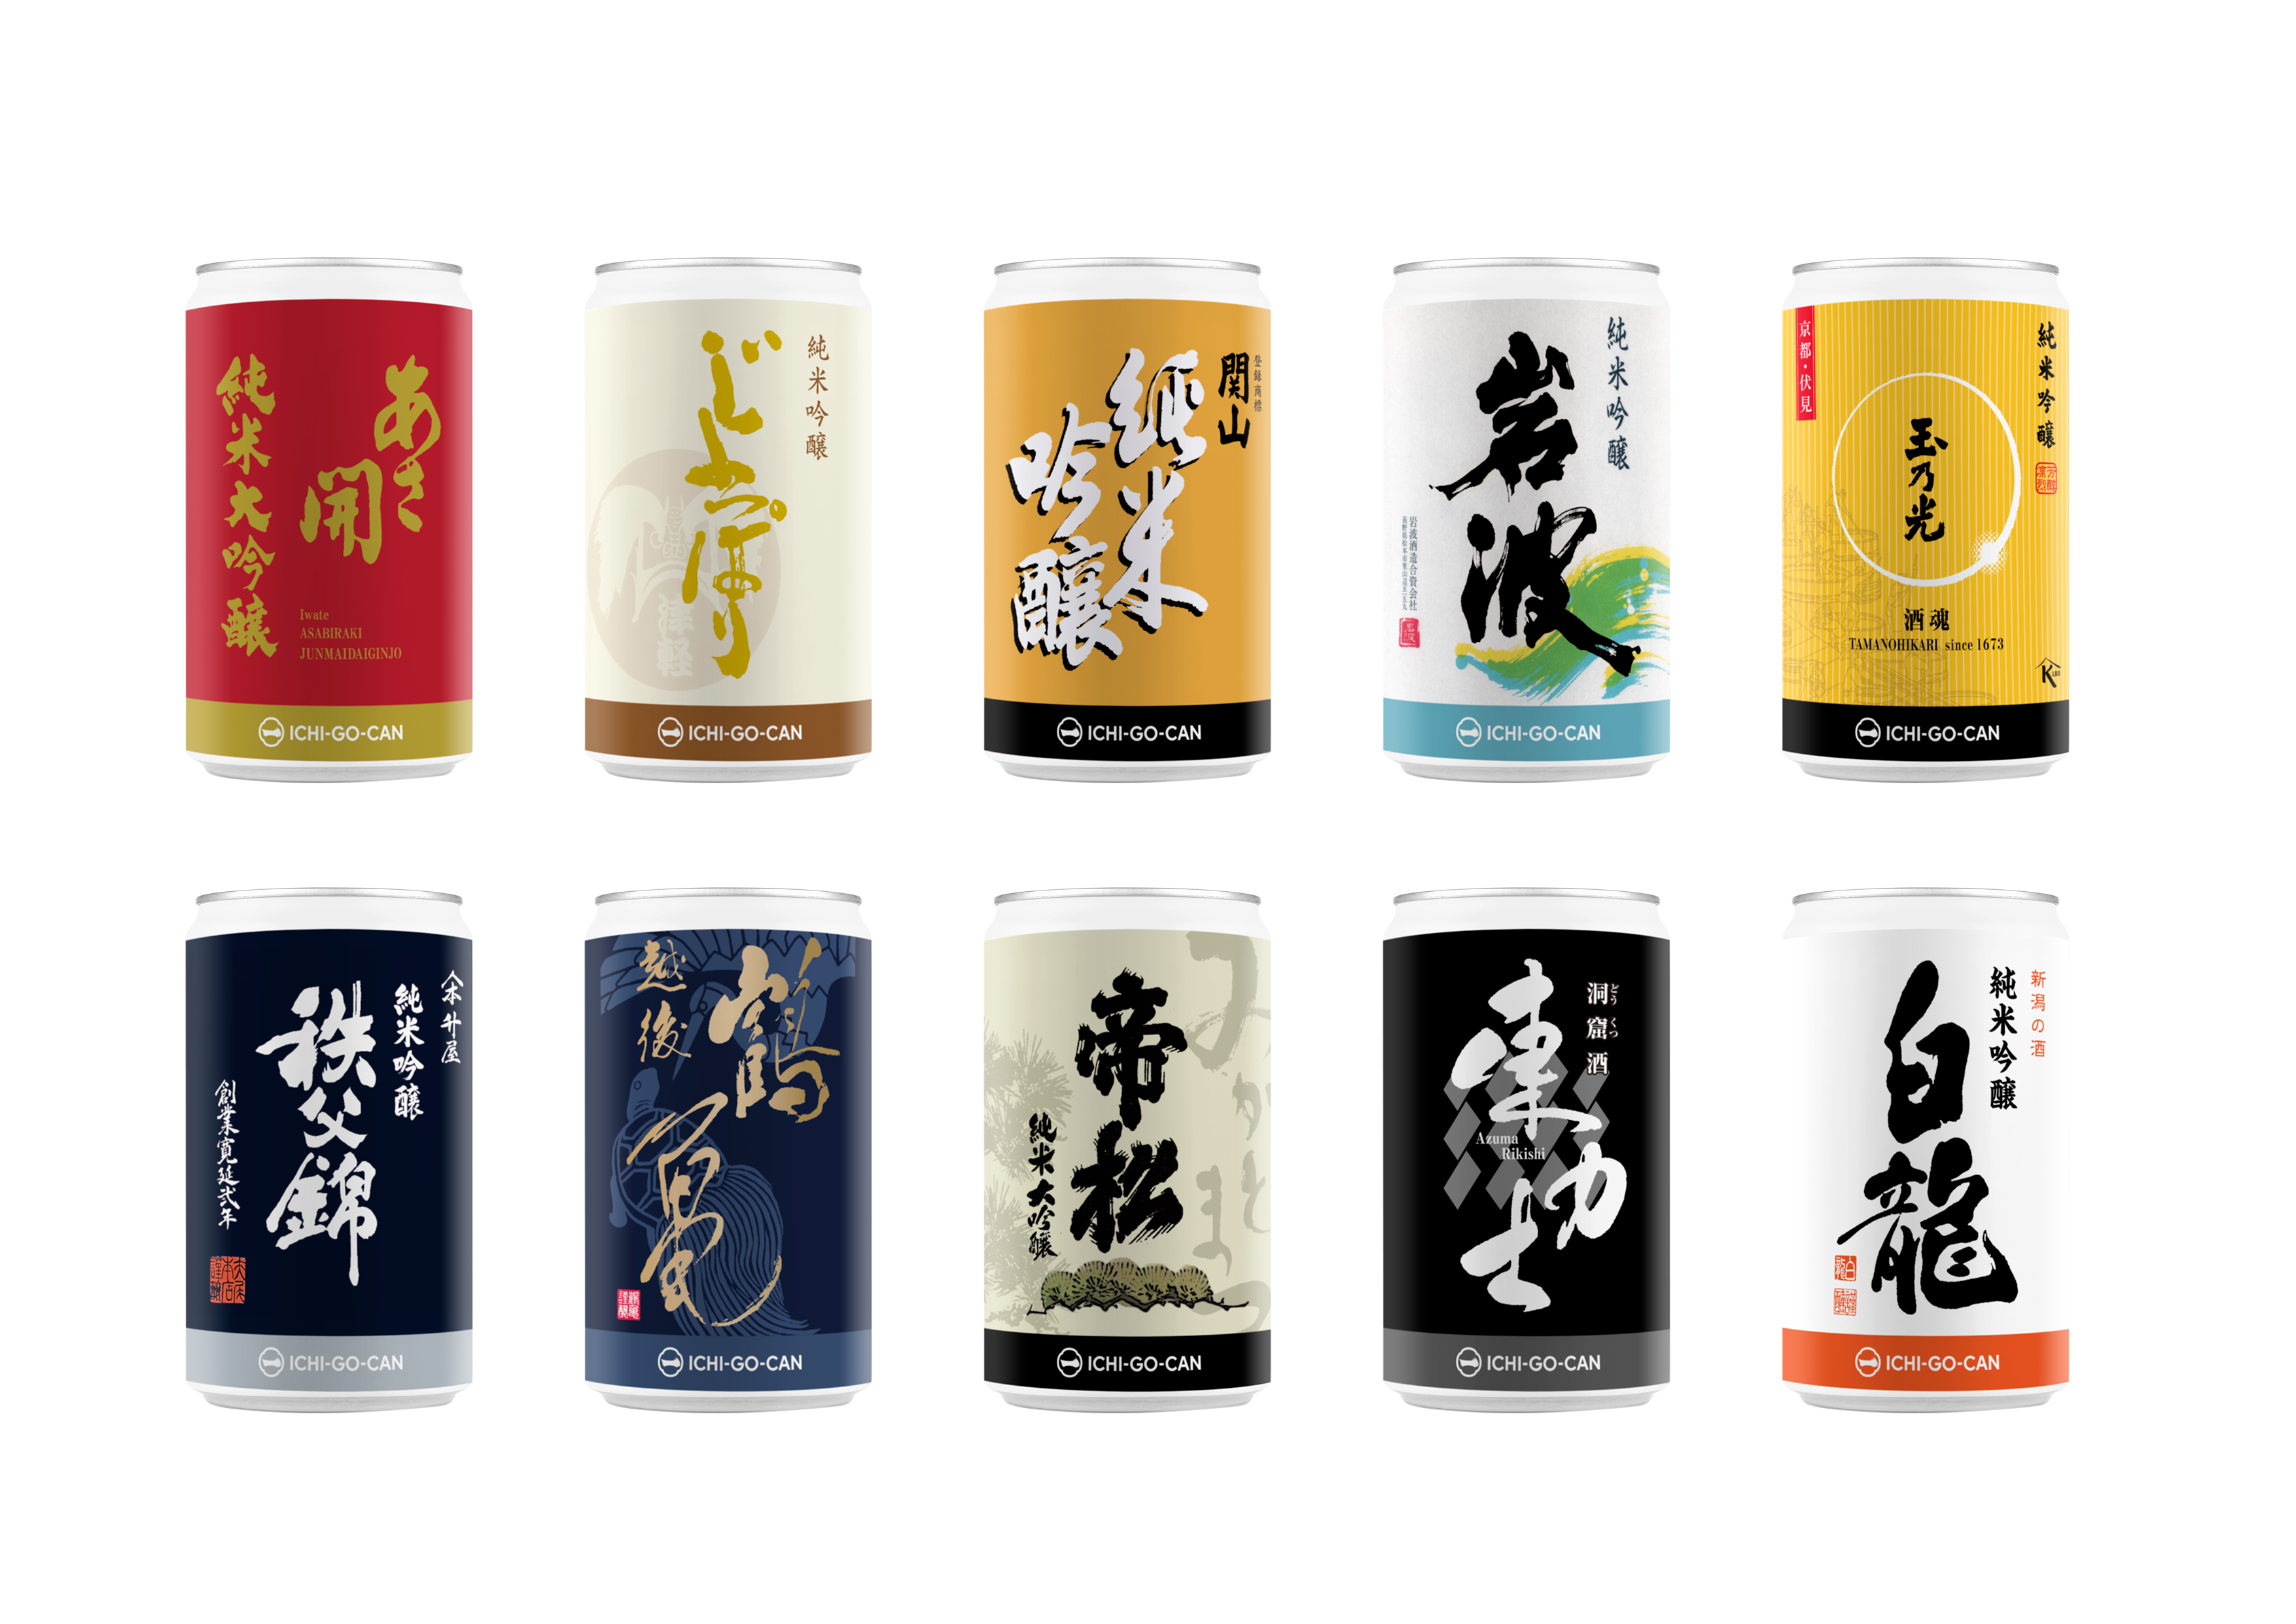 【新商品】全国の優良銘柄を造る蔵元が集結。日本酒「一合缶®」10缶飲み比べセットが新登場！